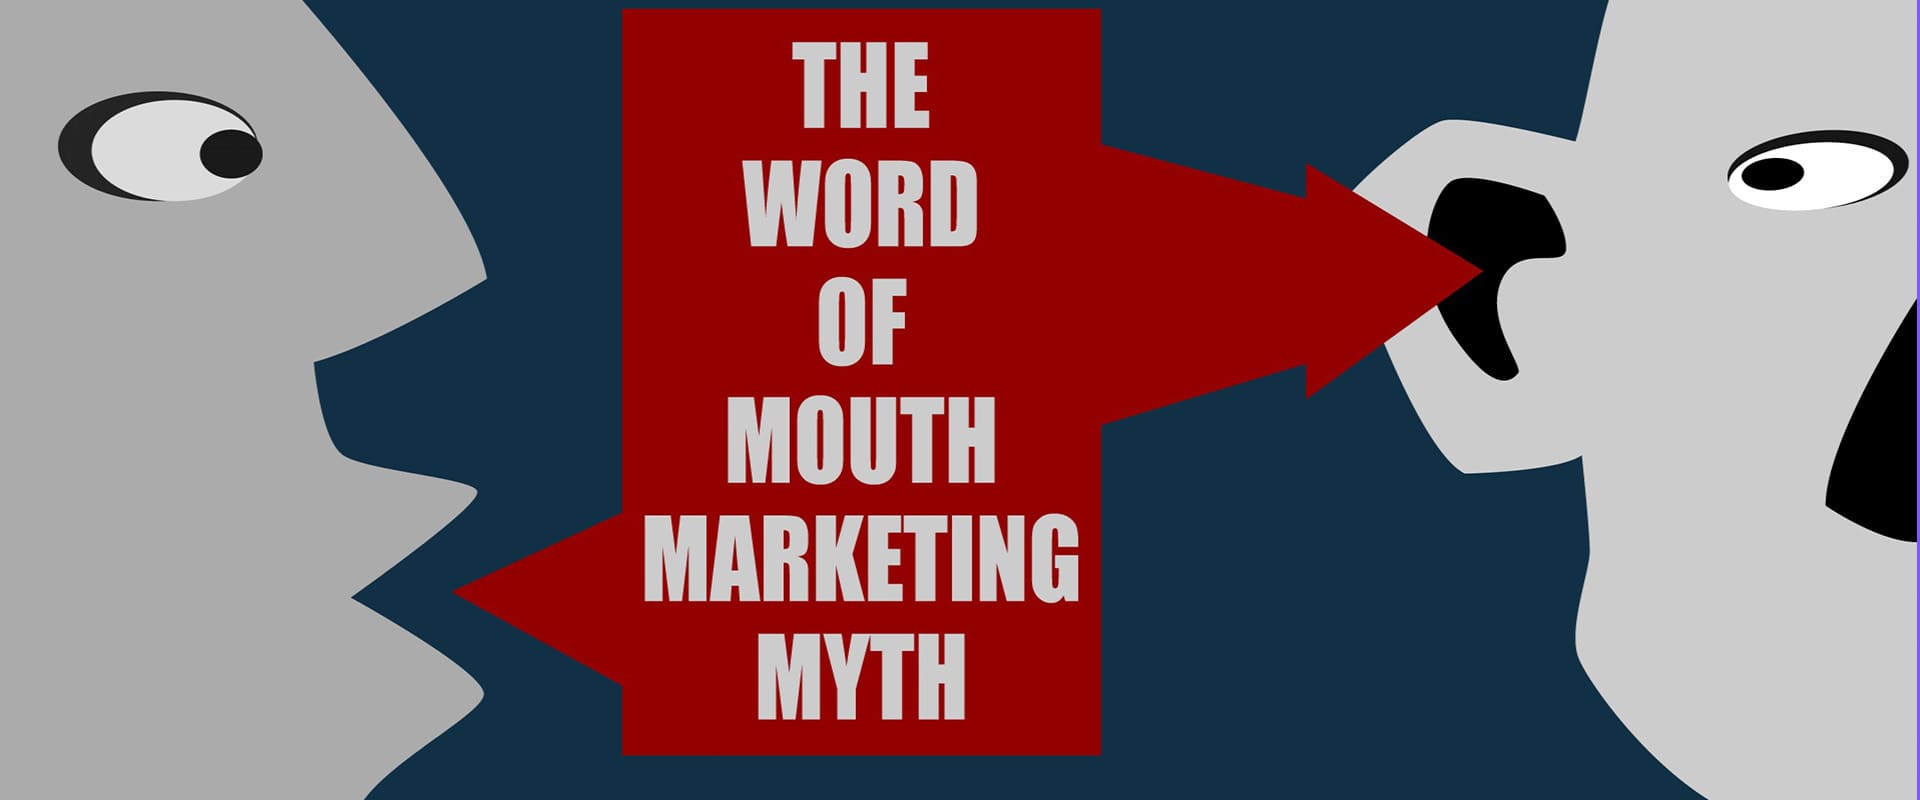 بازاریابی word of mouth | اسمارت ایکس